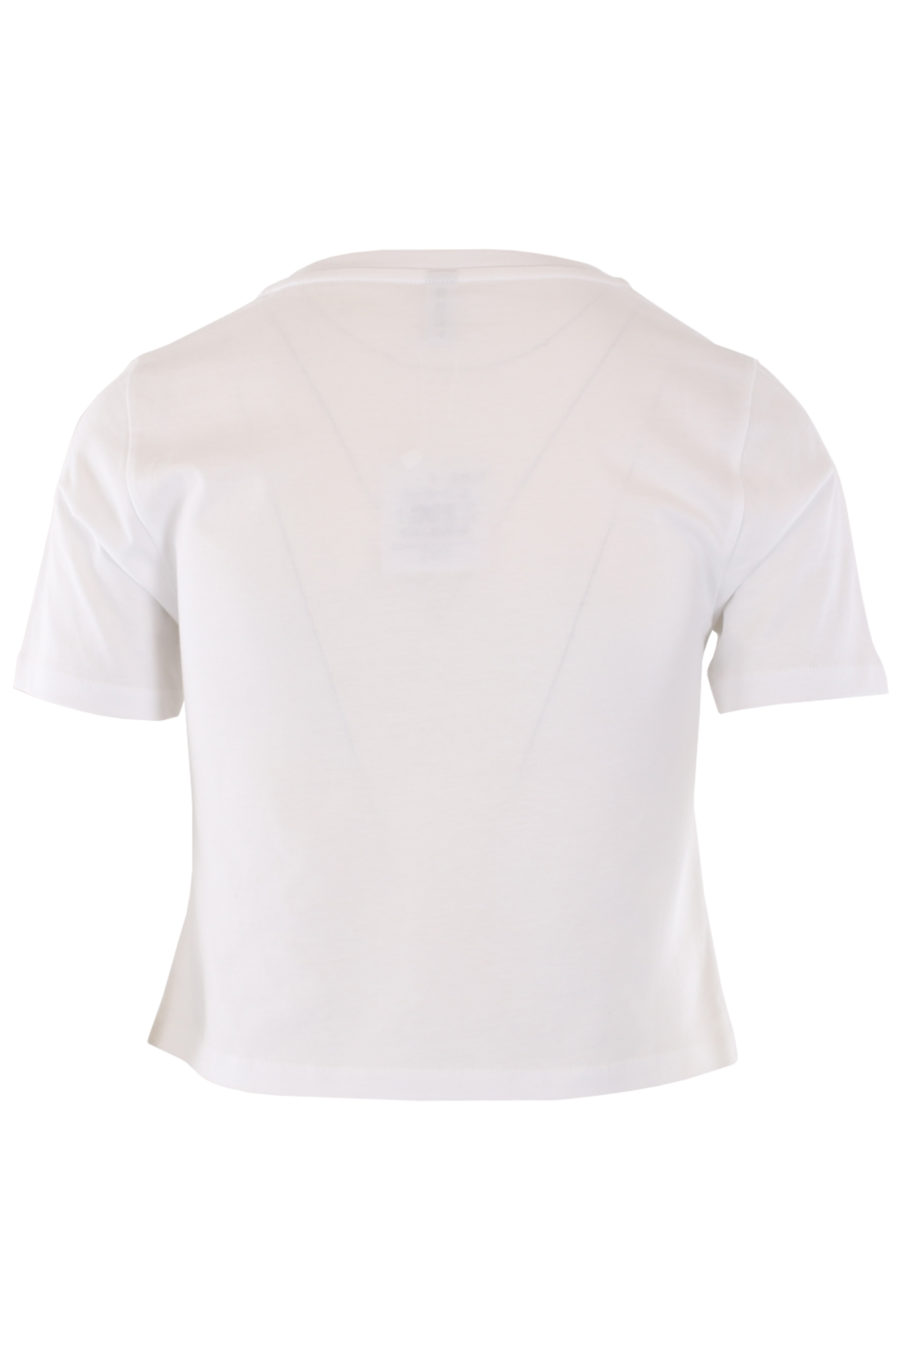 Camiseta blanca corta con logo tropical - IMG 0761